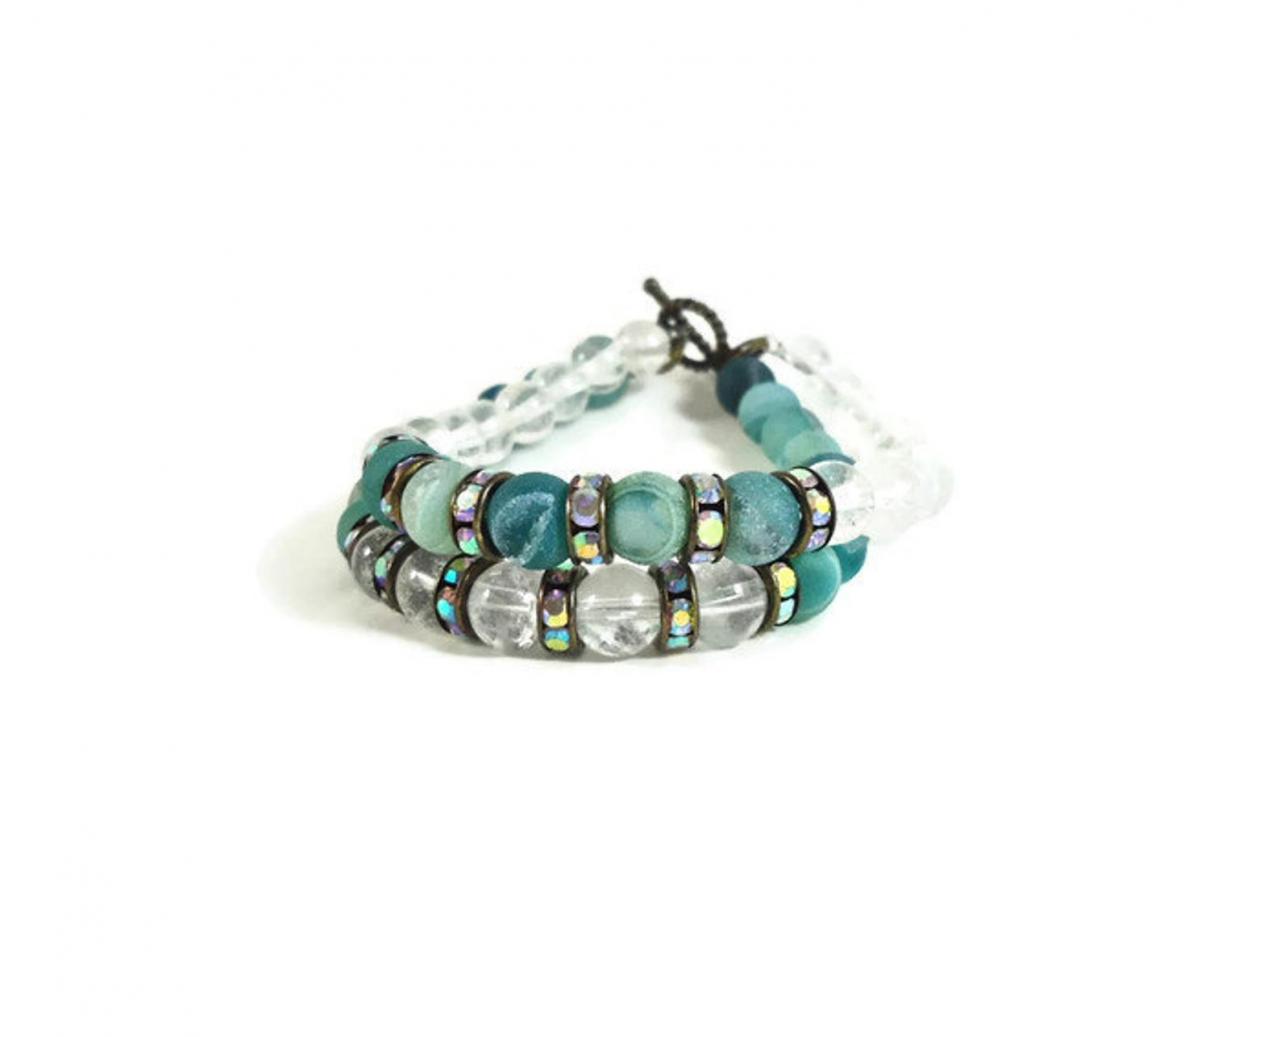 Druzy Boho Jewelry - Statement Bracelet - Layered Bracelet - Druzy Bracelet - Geode Bracelet - Green Everyday Jewelry - Druzy Boho Bracelet